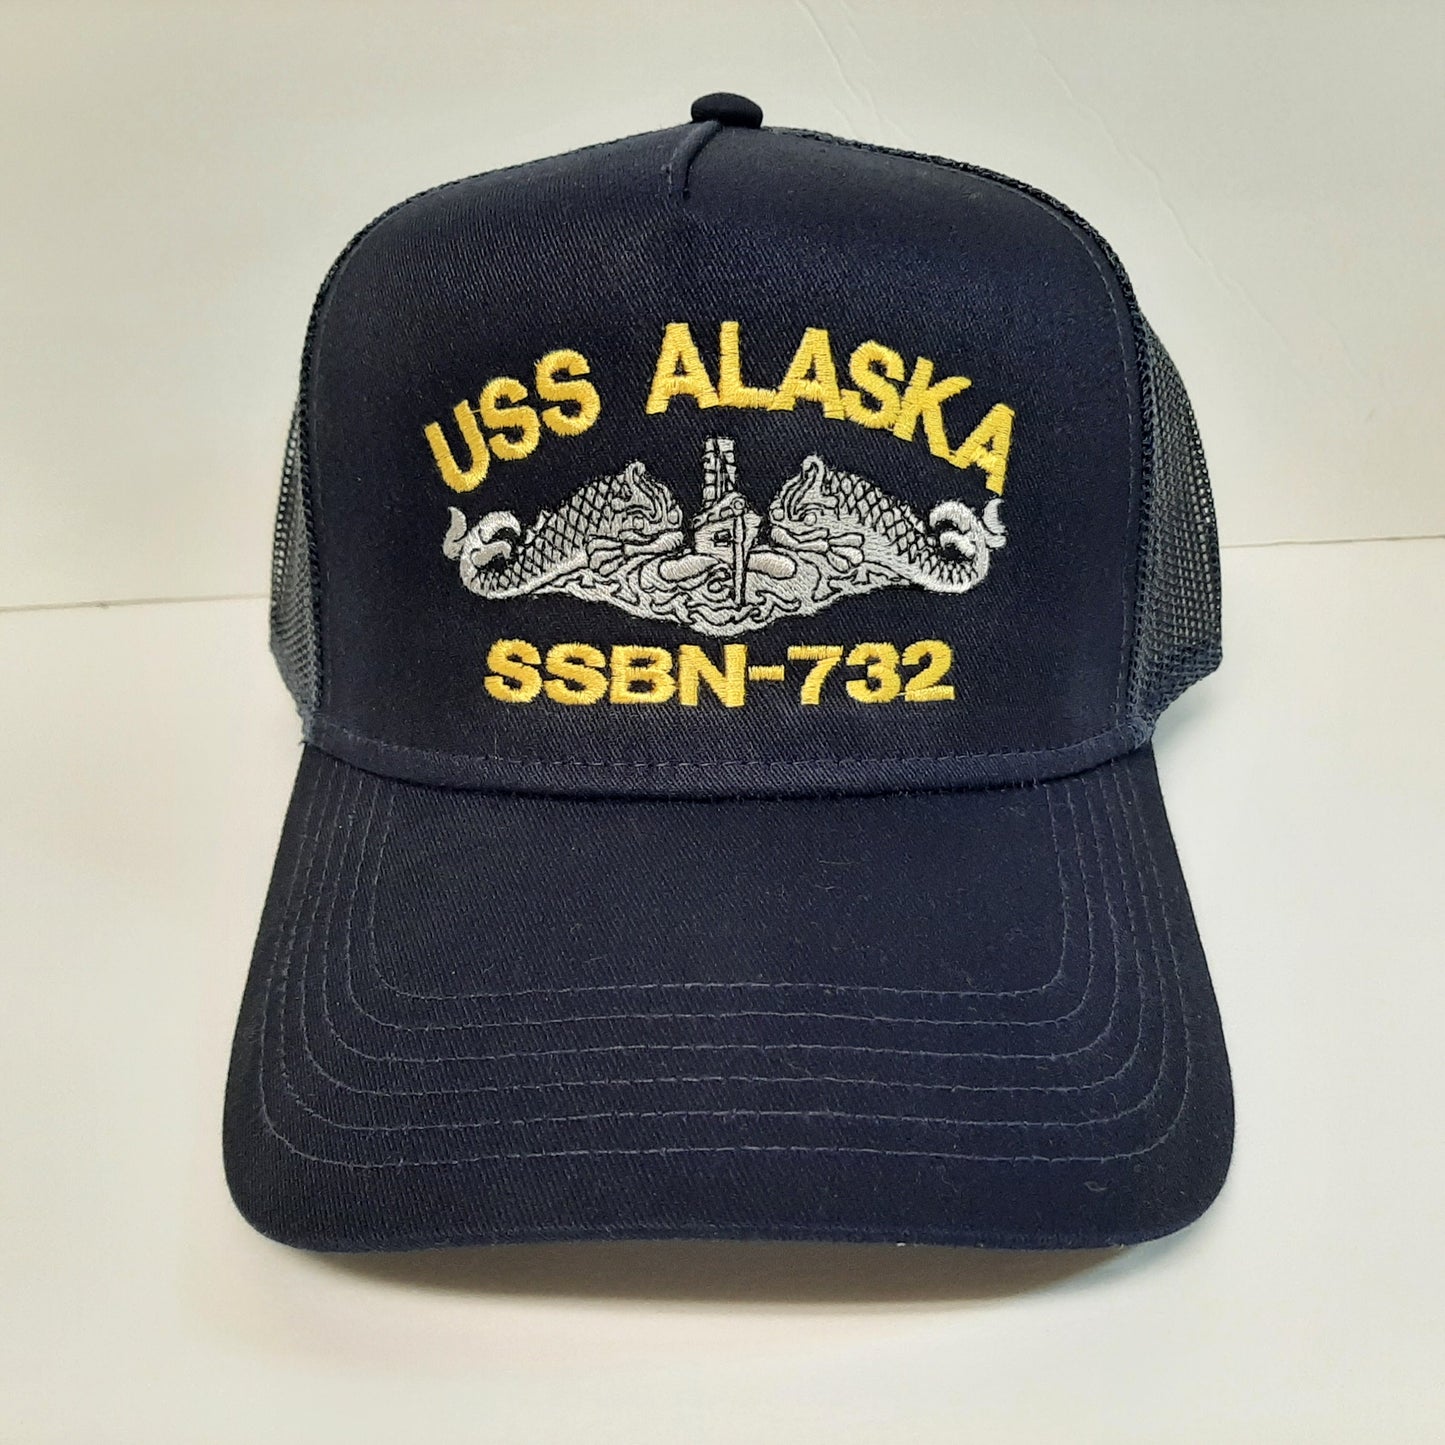 USS Alaska SSBN-732 Boat Baseball Cap Hat Mesh Snapback Blue Embroidered US Navy